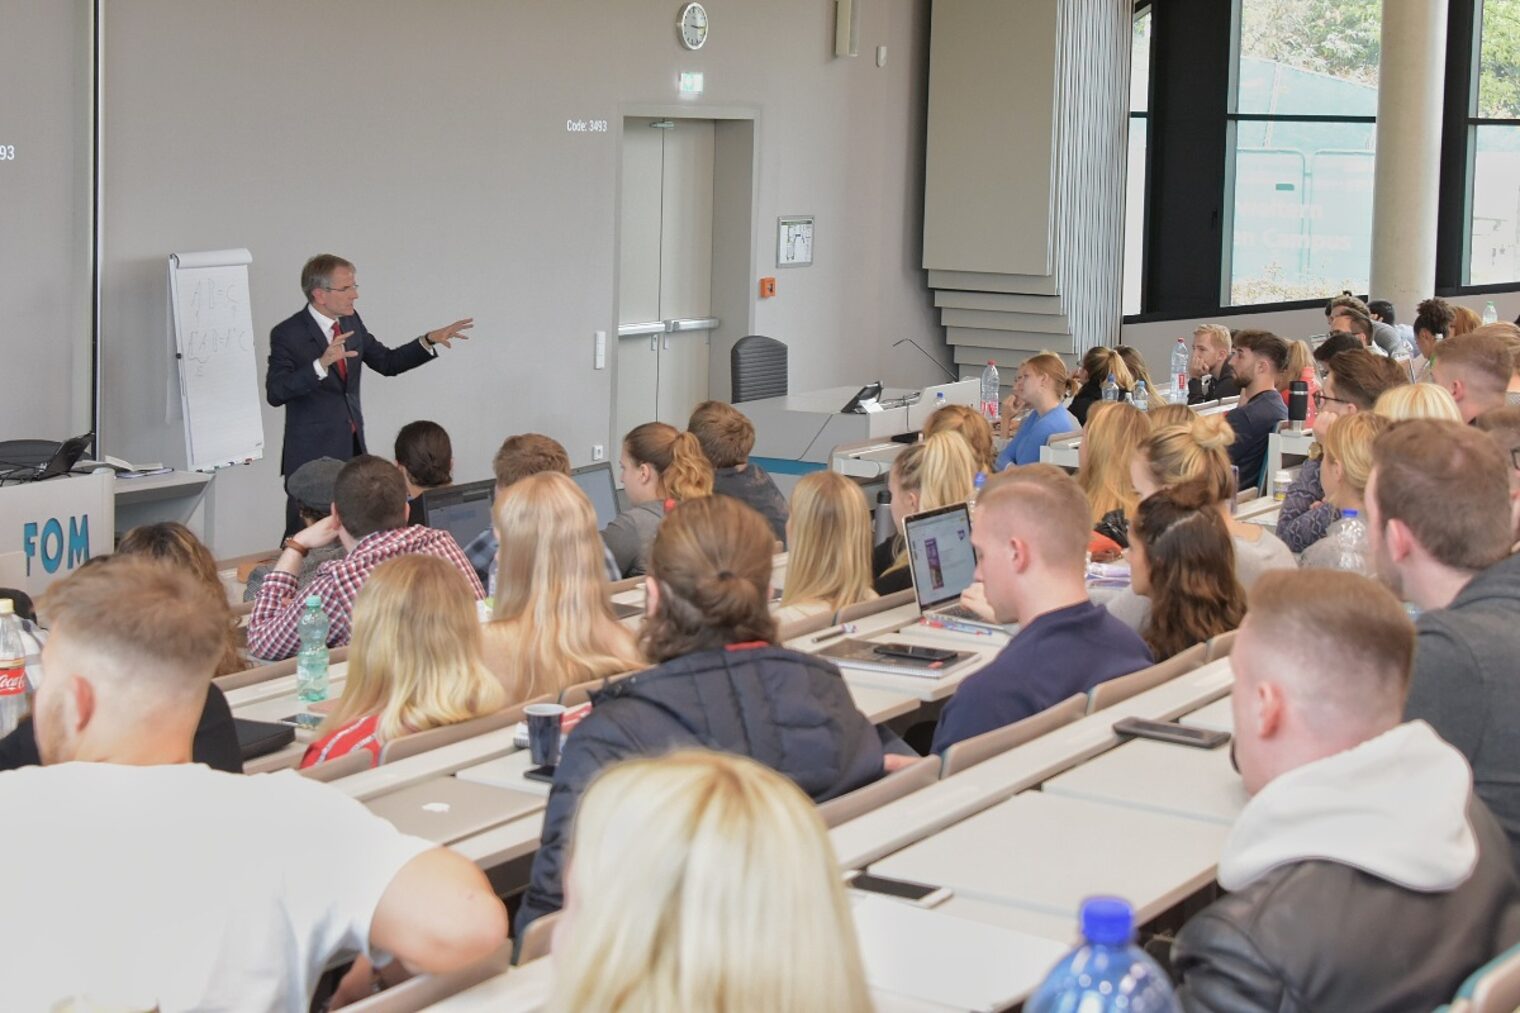 Vortrag von Kammerpräsident Ehlert in der FOM-Hochschule in Düsseldorf.